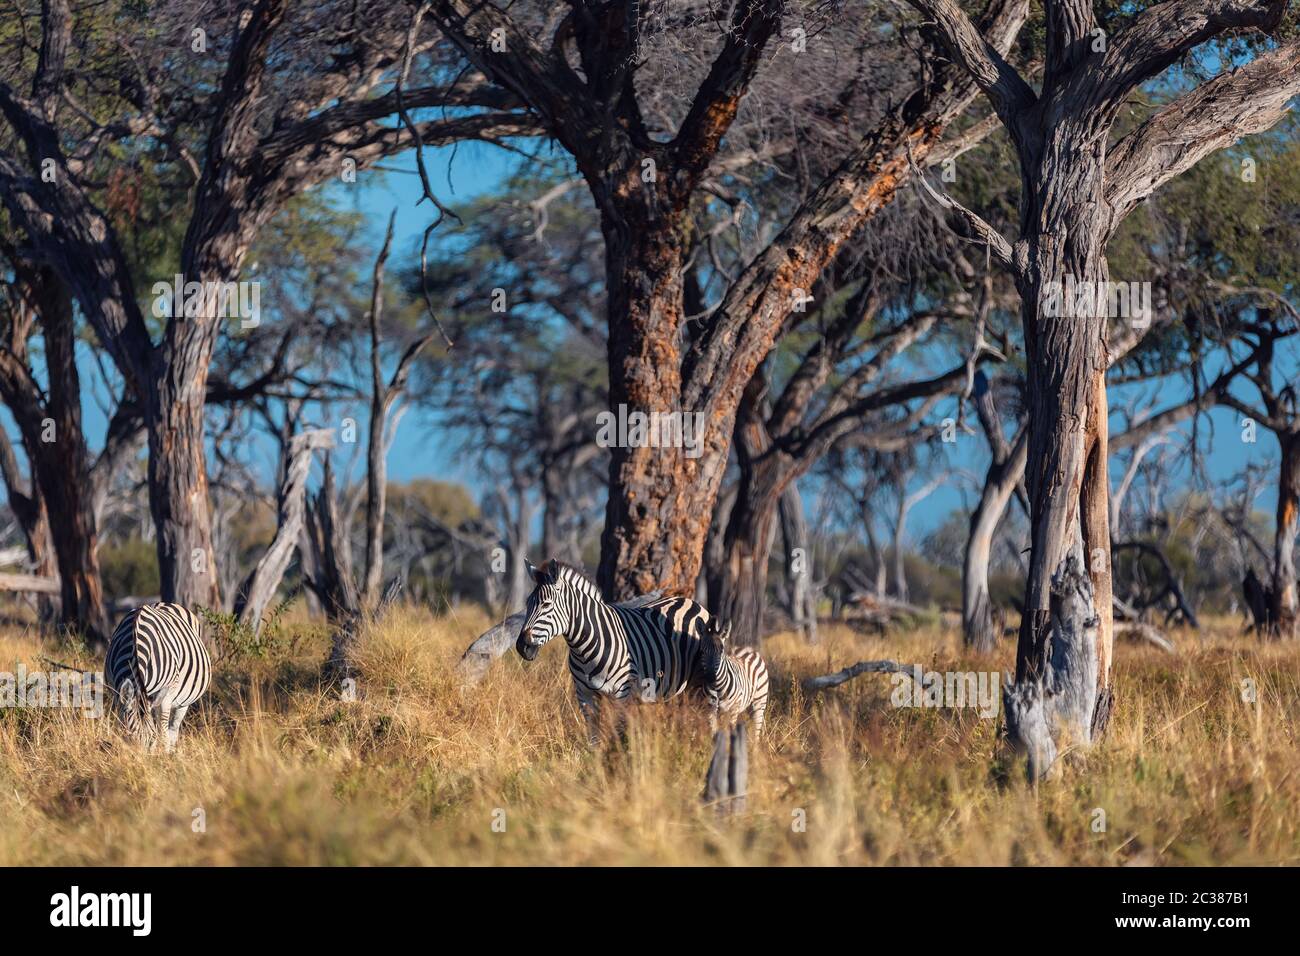 Schöne abgestreift Zebra Kopf im afrikanischen Busch. Moremi Game Reserve, Botswana Safari Wildlife. Wildes Tier in der Natur Lebensraum. Afrika. Stockfoto